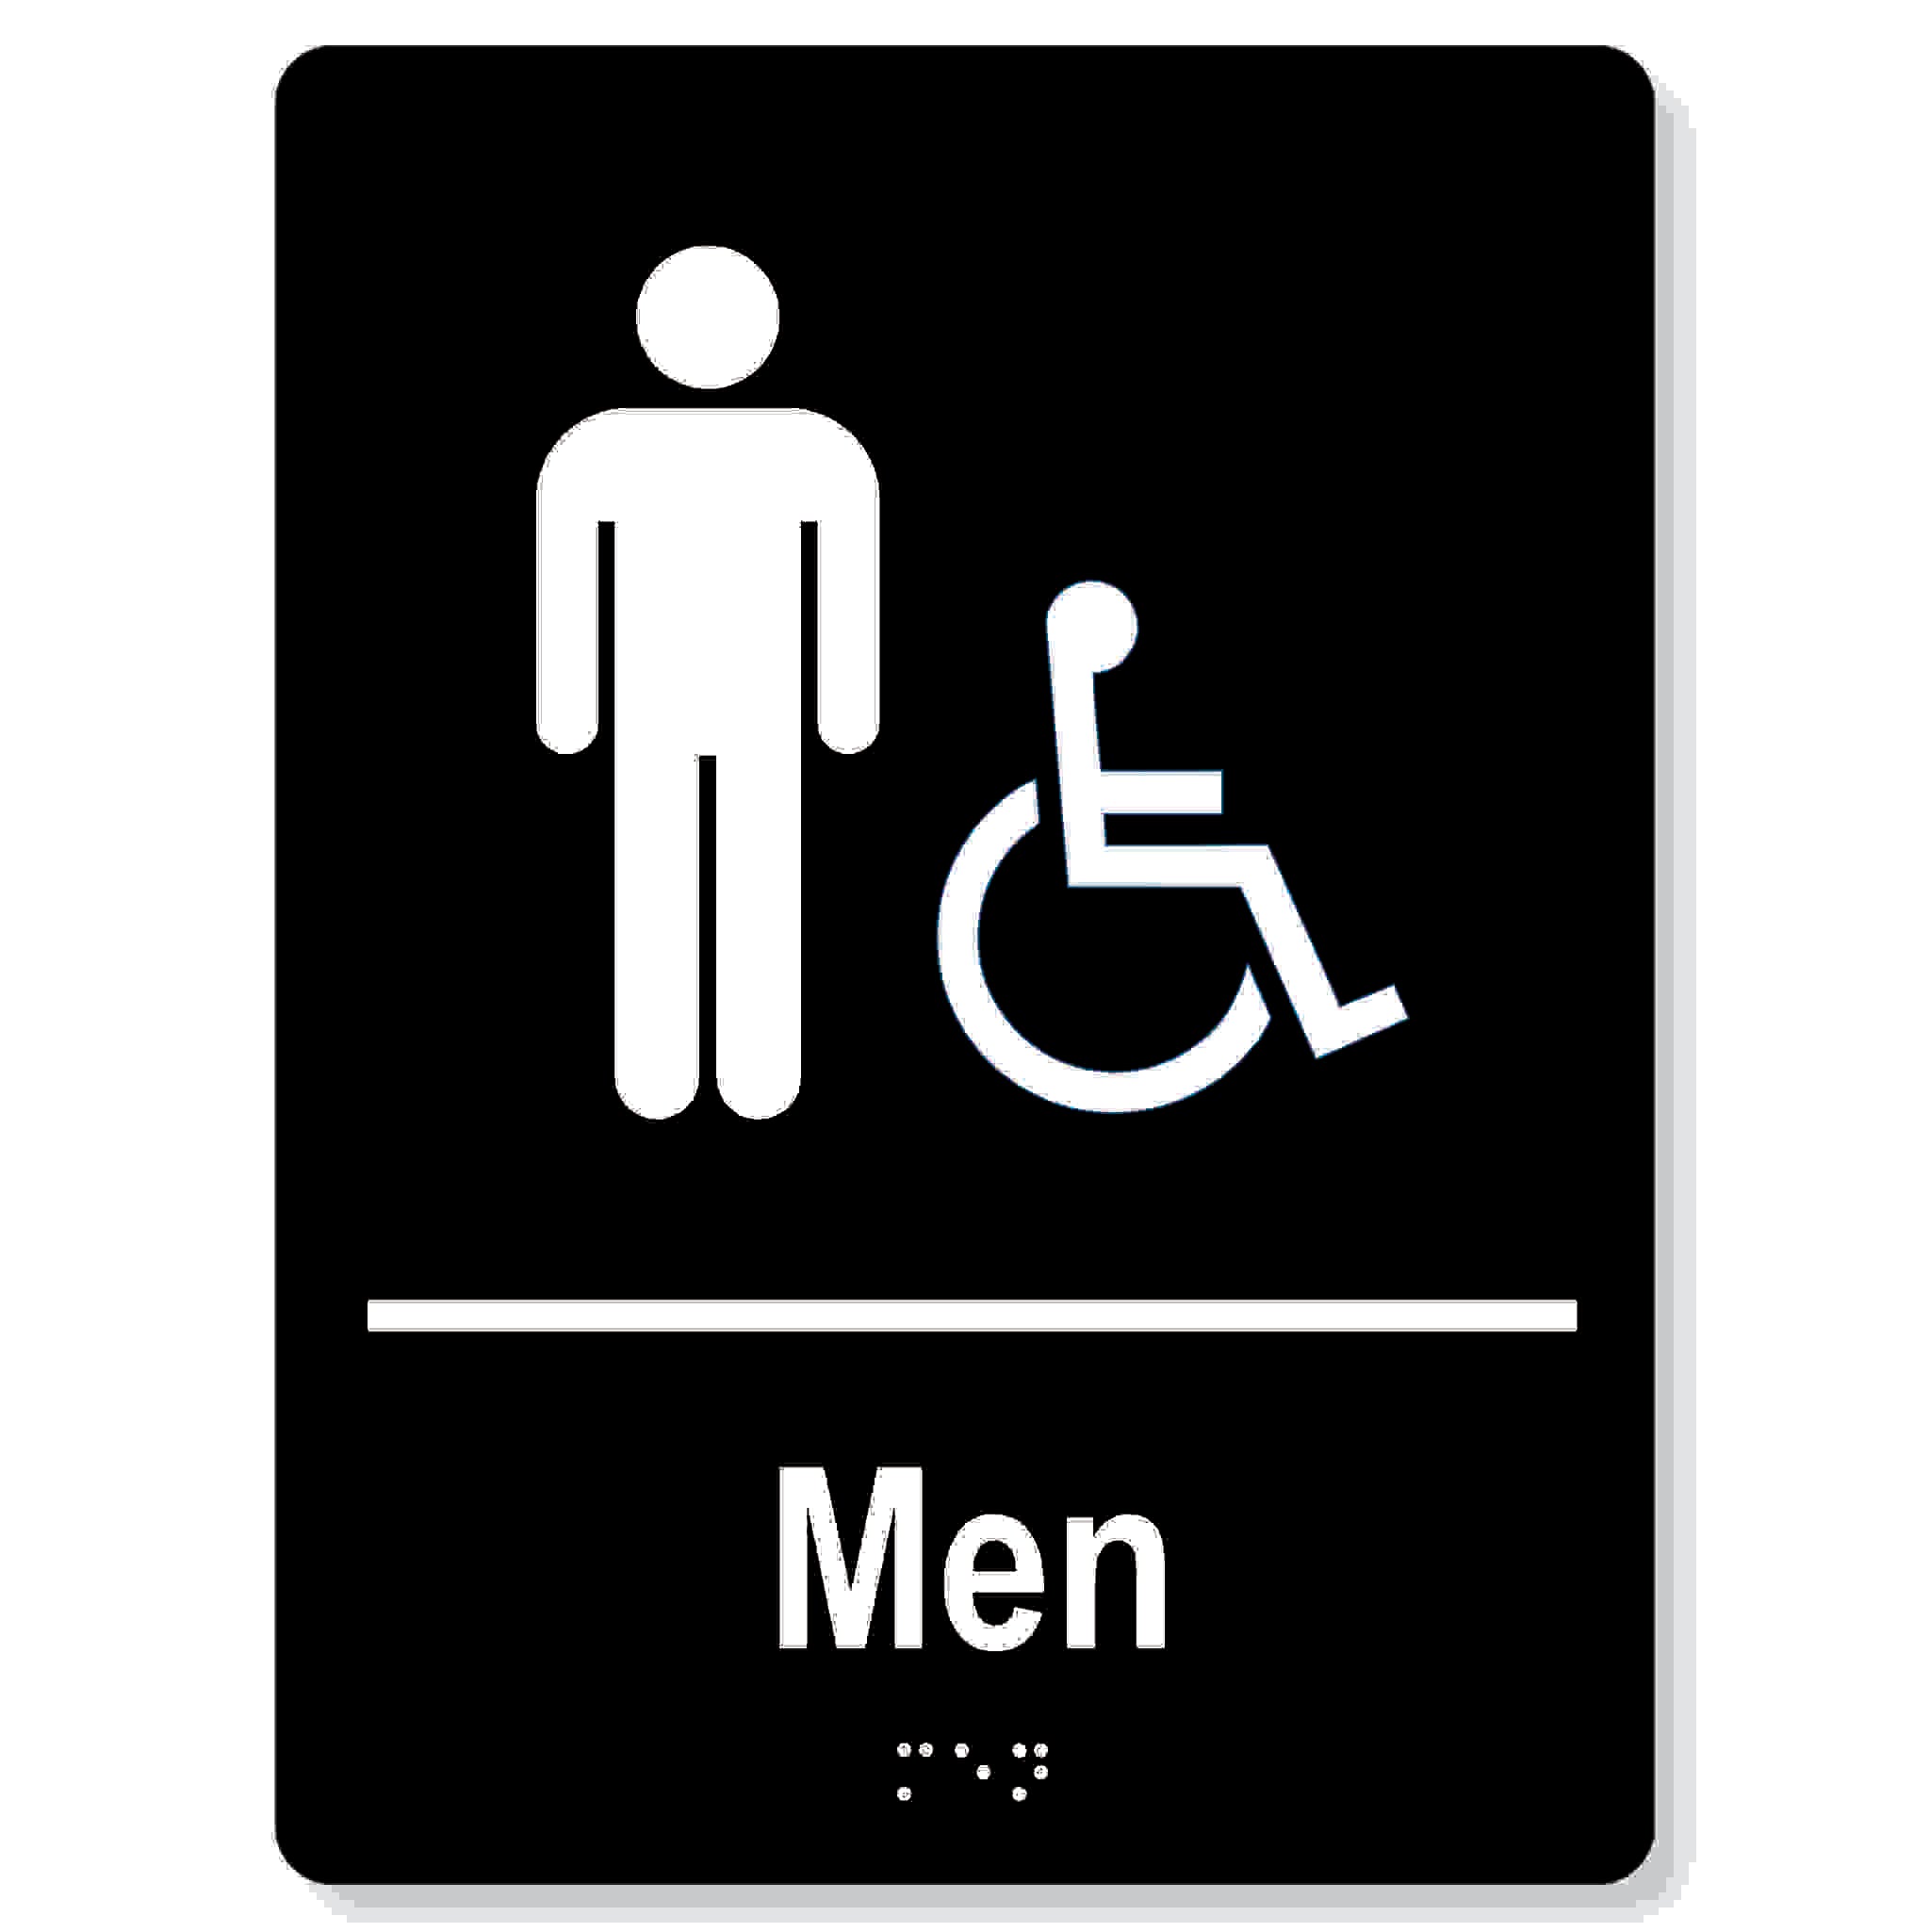 Men accessible washroom sign